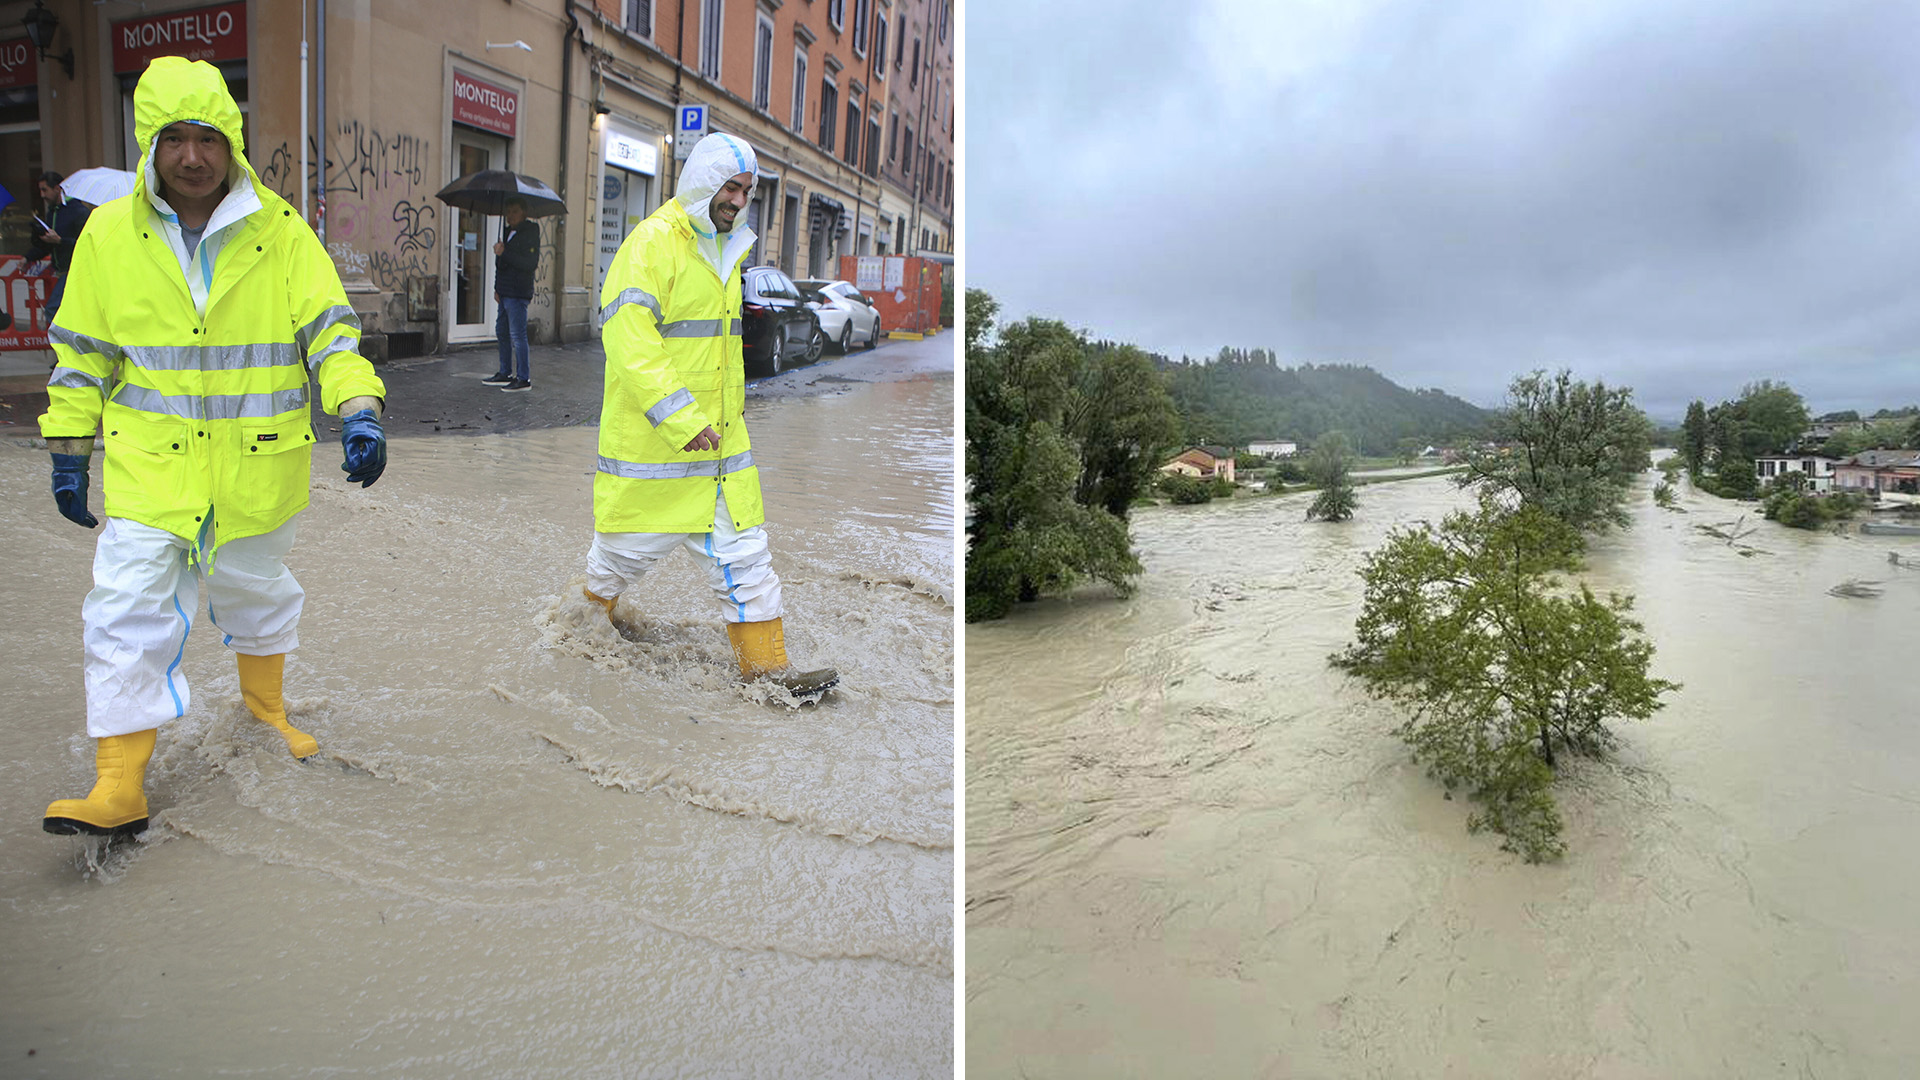 Molte persone sono morte in Italia a causa di forti temporali